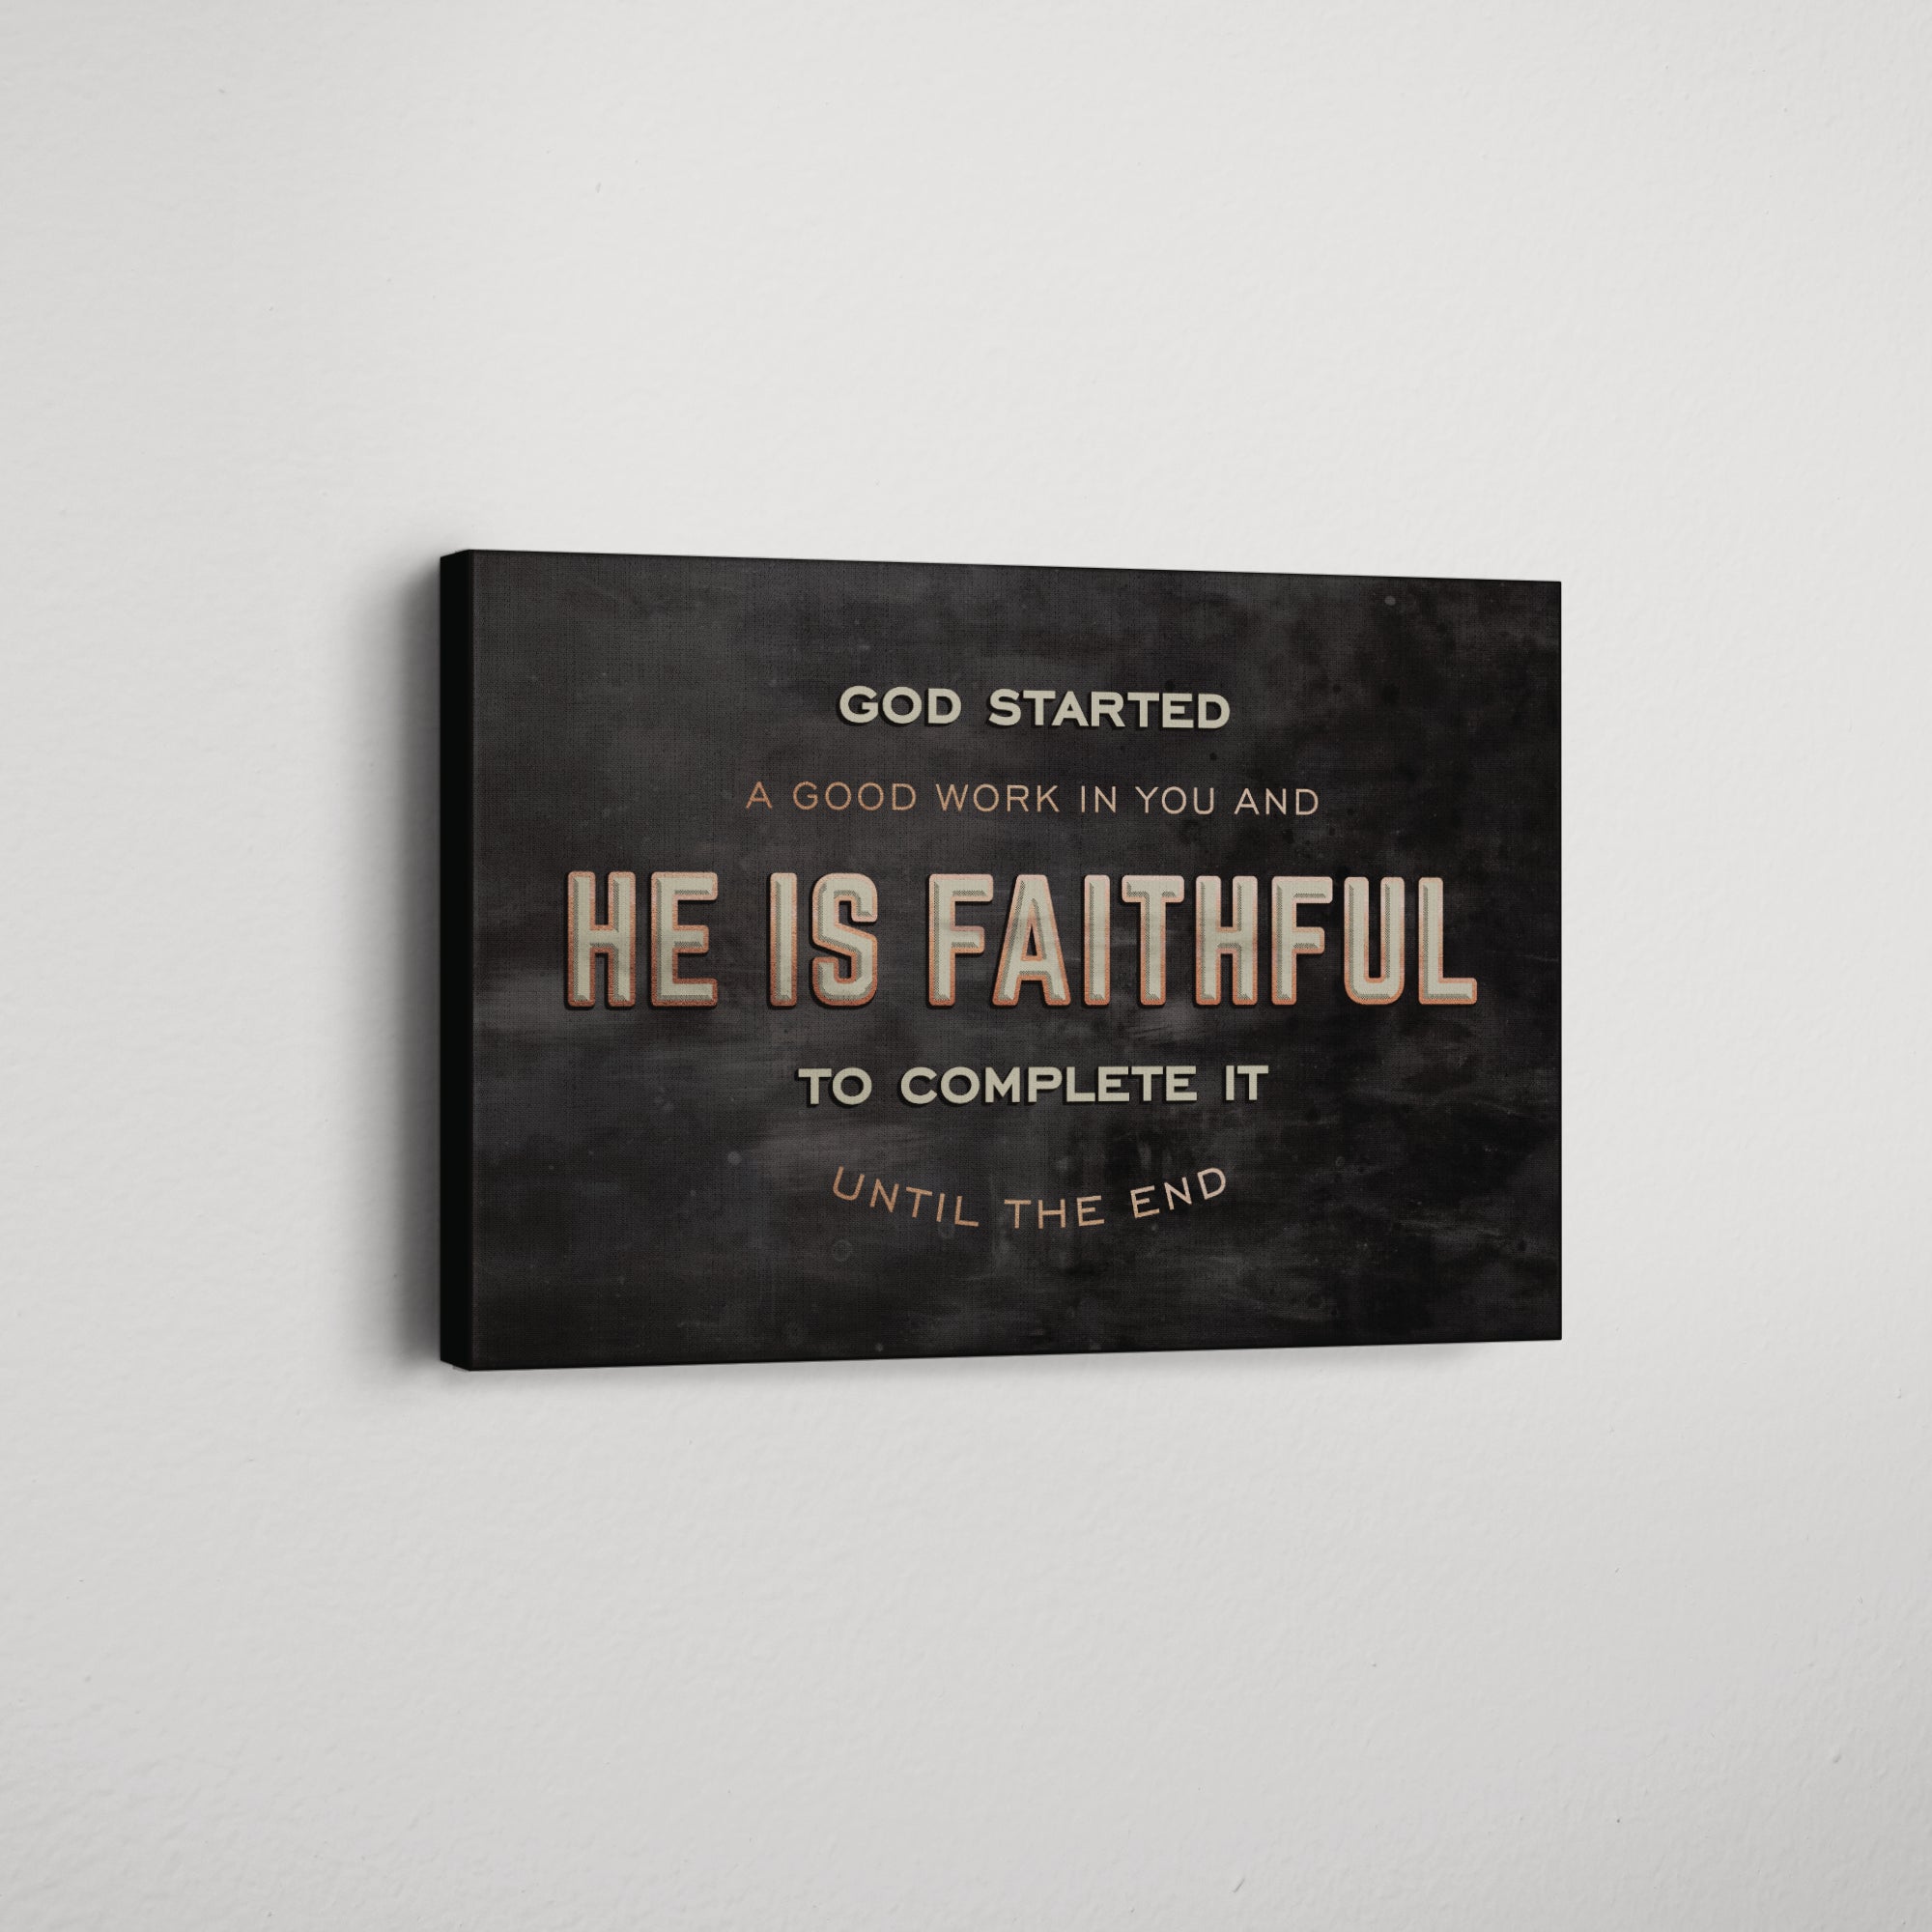 He is Faithful